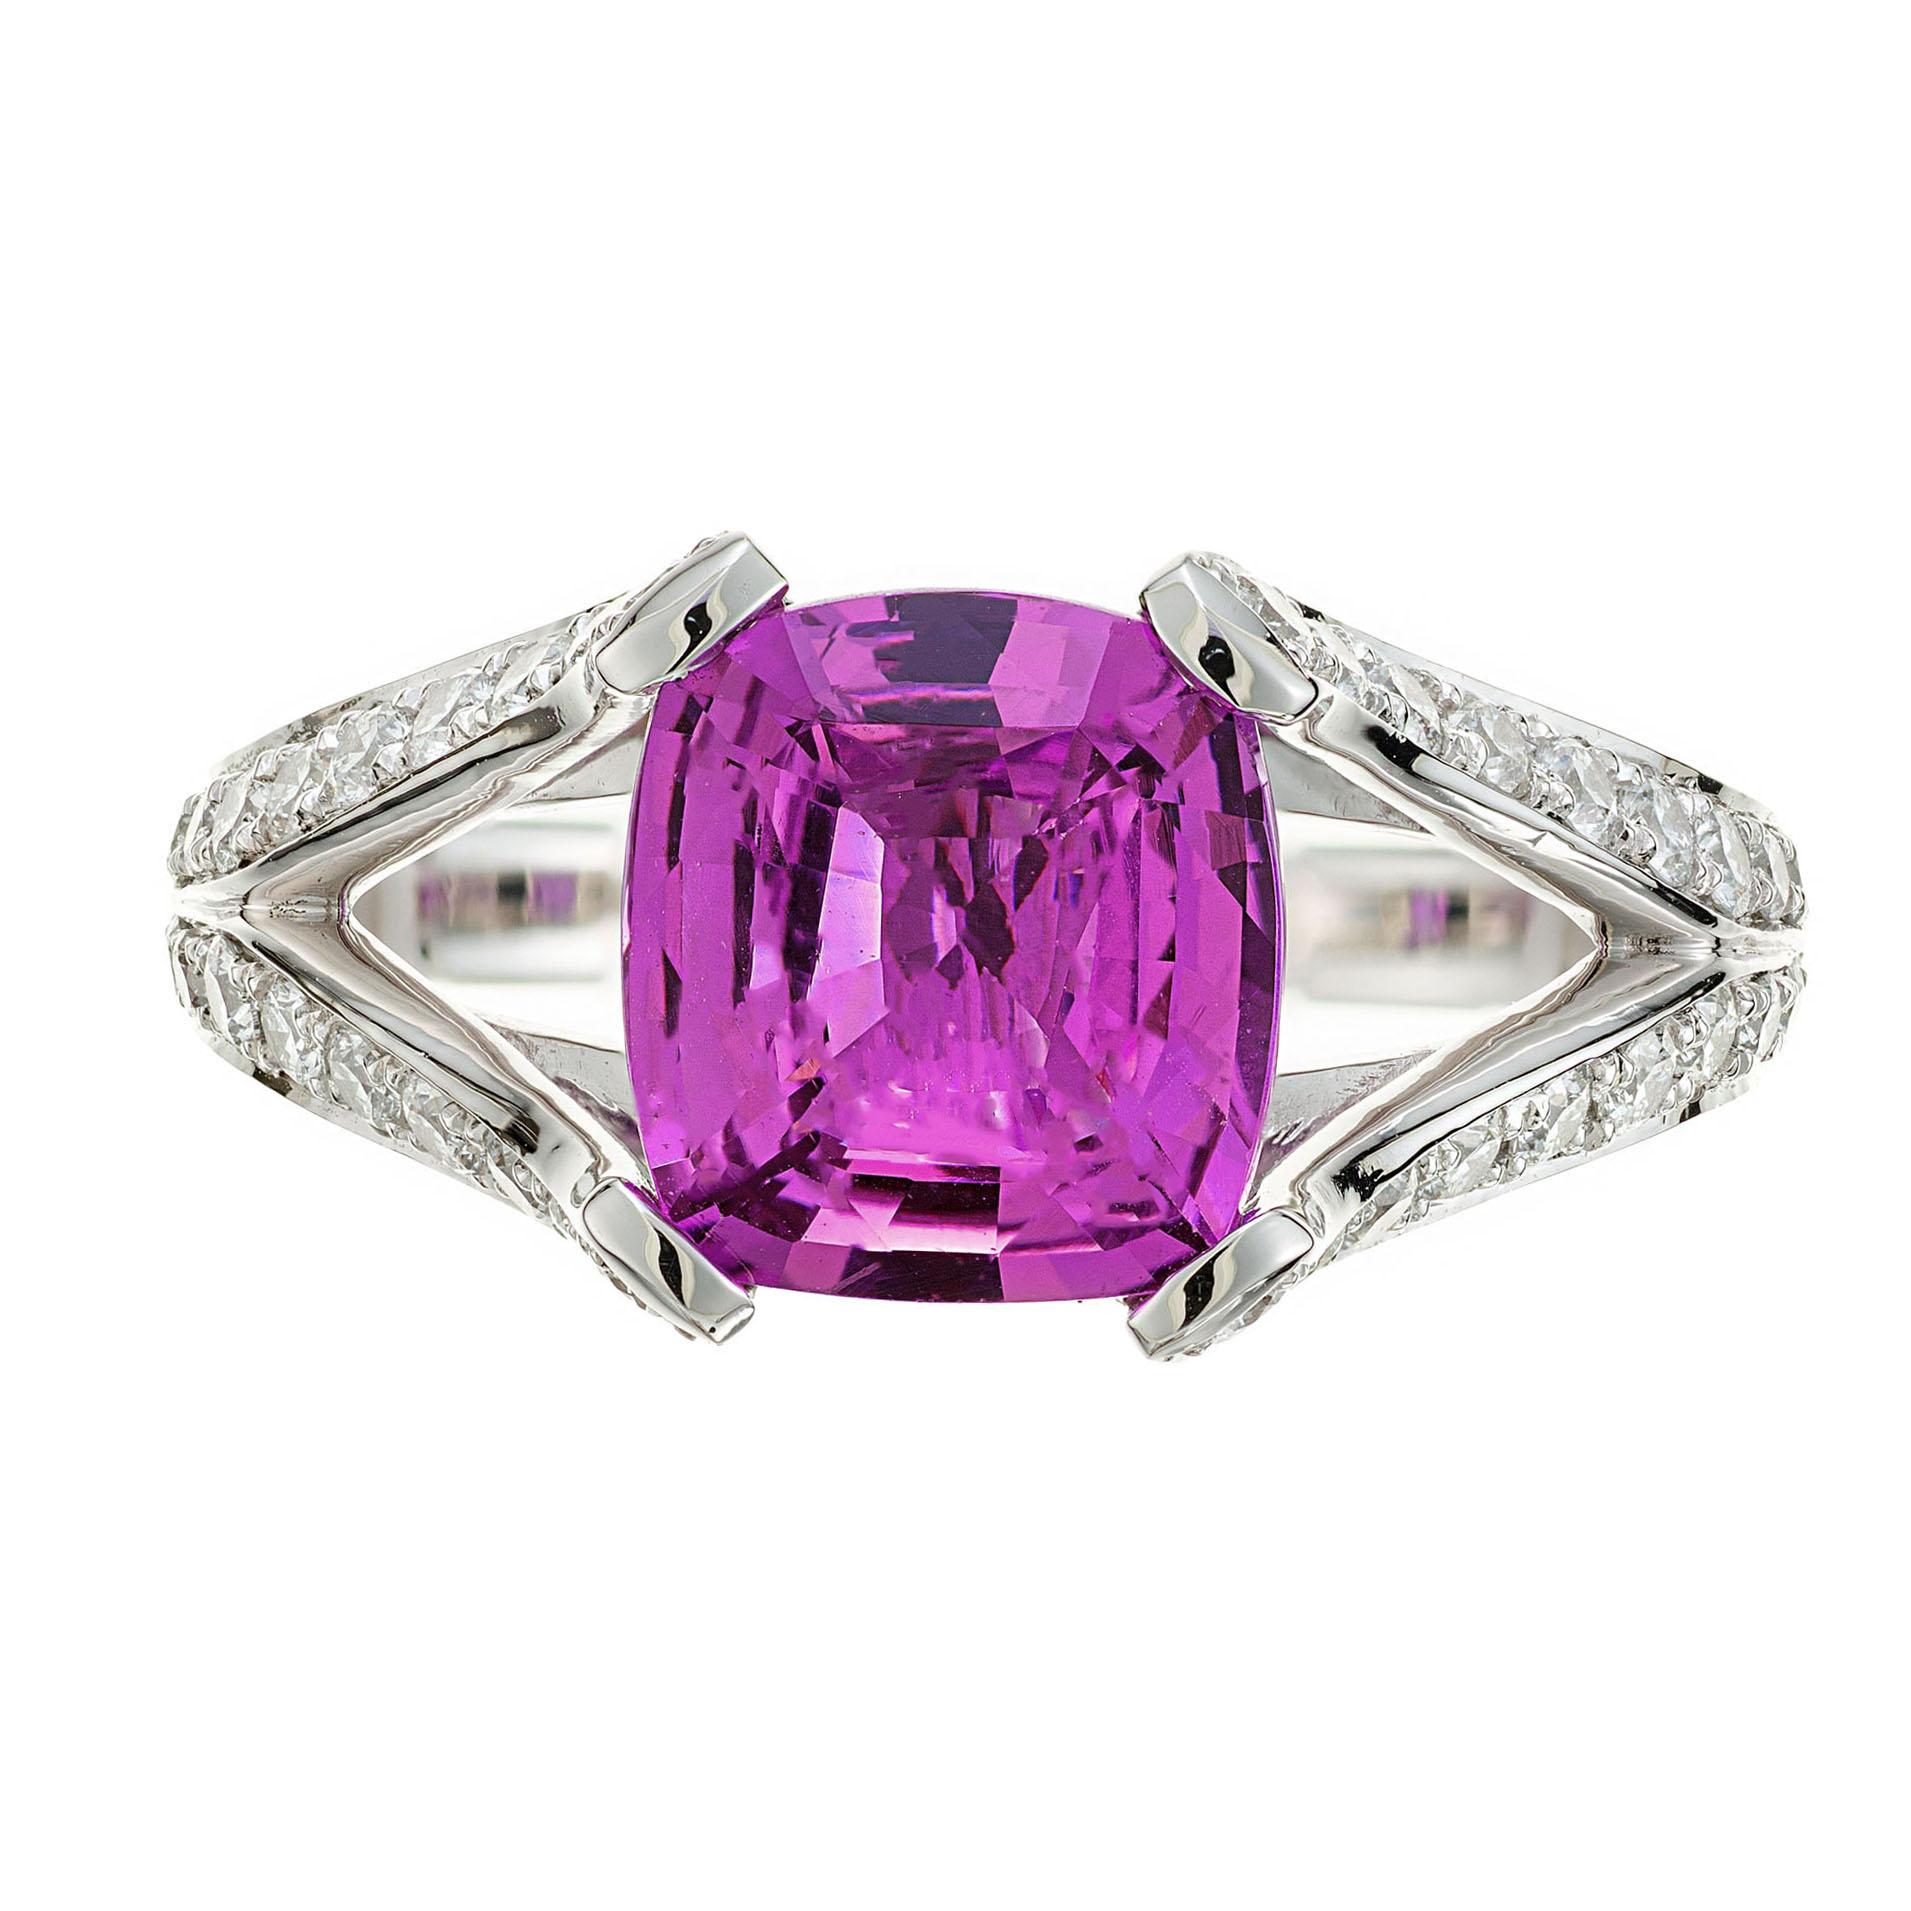 Bague de fiançailles en saphir rose et diamant. Saphir central de taille coussin certifié par le GIA dans une monture à tige fendue en platine. 54 diamants ronds de taille brillant. Il s'agit tout simplement de l'un des plus beaux saphirs roses